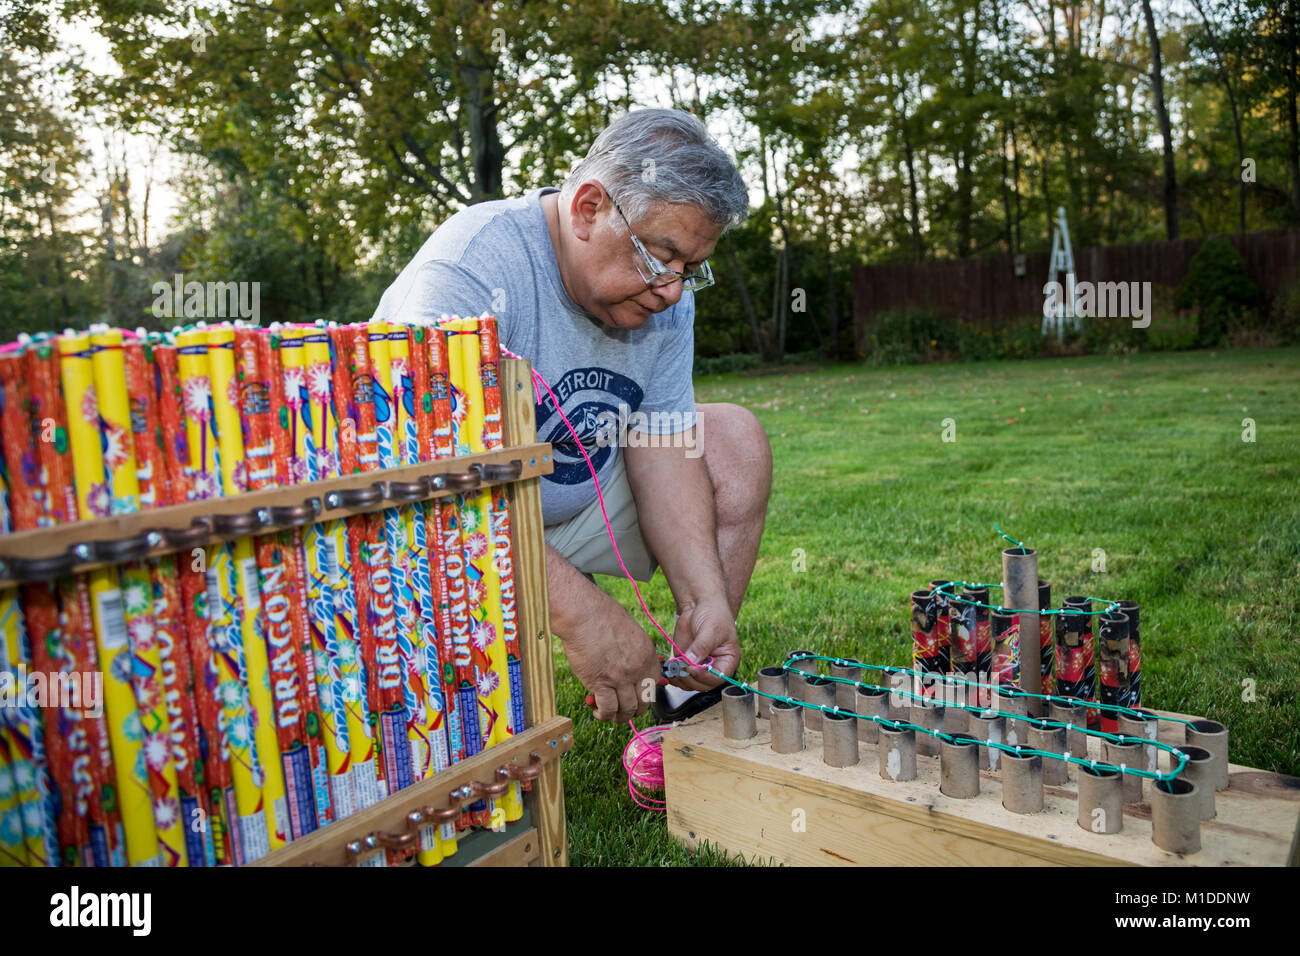 Port Huron Township, Michigan - Lorenzo Almendarez, Suor collega i fusibili per uno spettacolo di fuochi d'artificio nella sua casa. Foto Stock